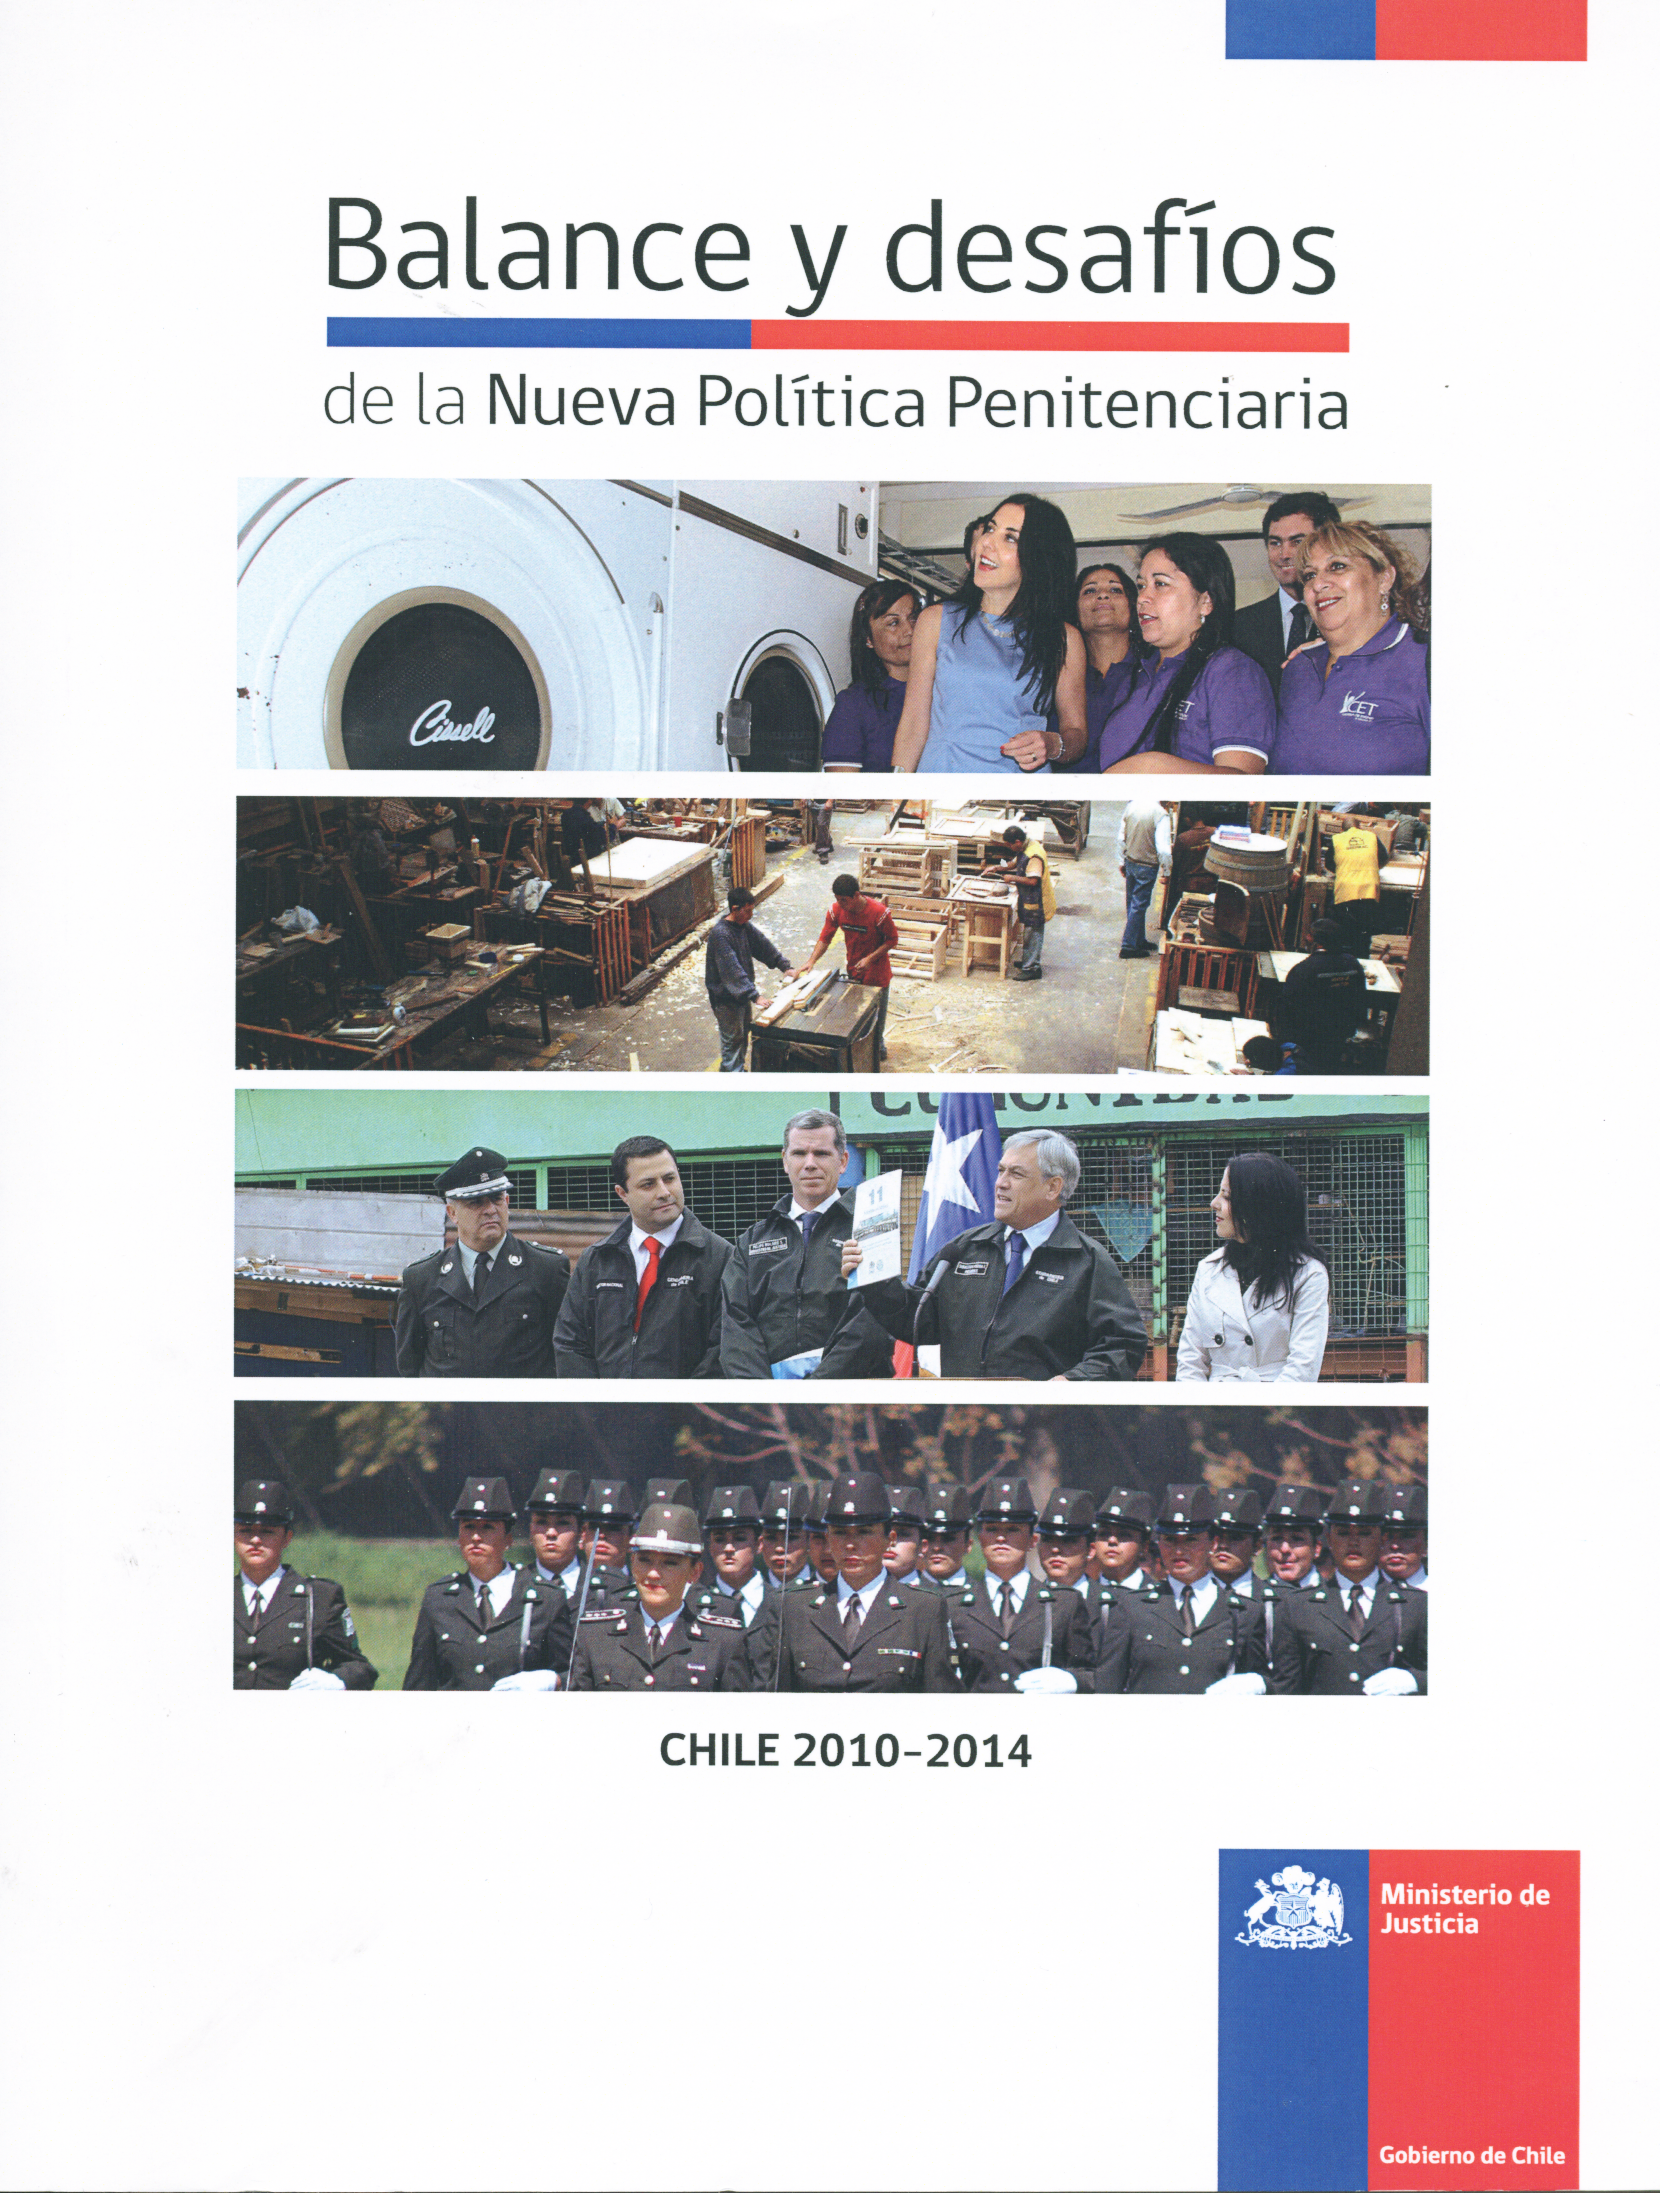 Balance y desafíos de la Nueva Política Penitenciaria. Chile 2010-2014